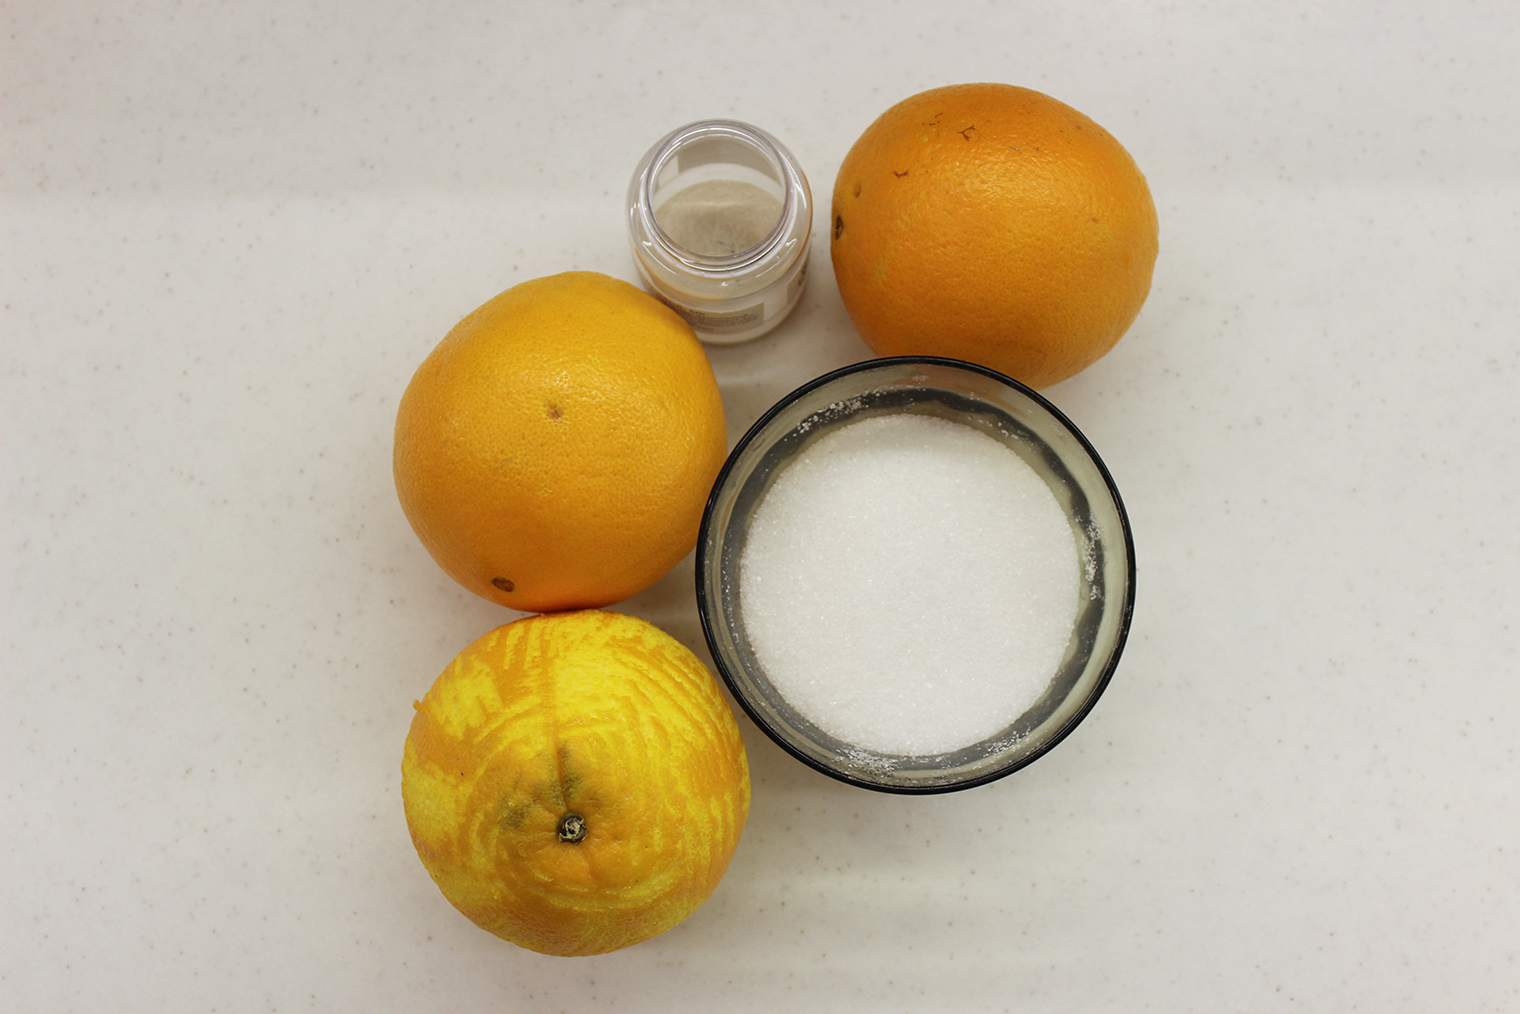 Ингредиенты для начинки: цедра с одного апельсина уже ушла в тесто